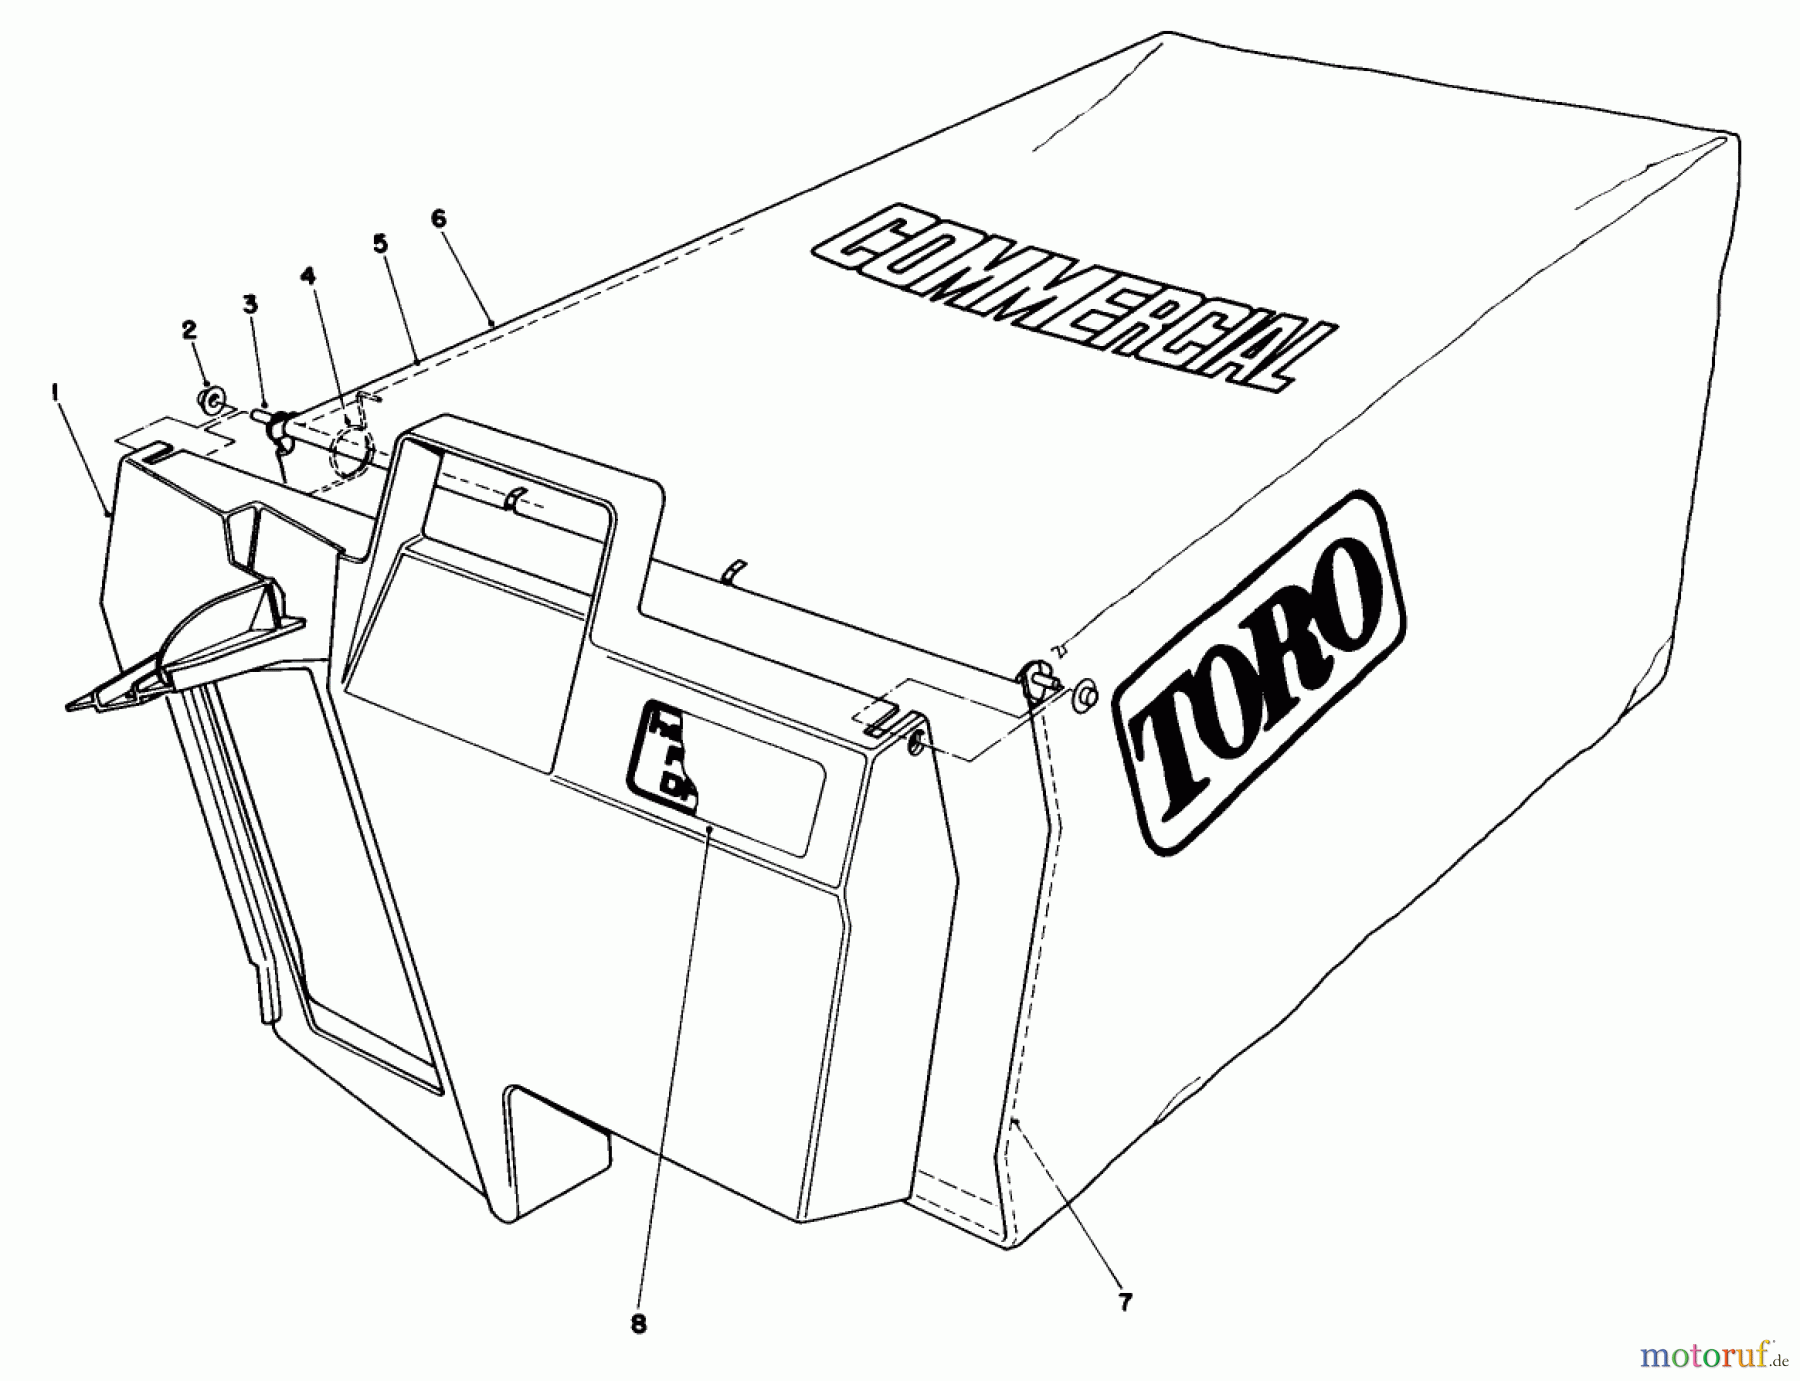  Toro Neu Mowers, Walk-Behind Seite 2 22015 - Toro Lawnmower, 1985 (5000001-5999999) GRASS BAG ASSEMBLY NO. 11-5609